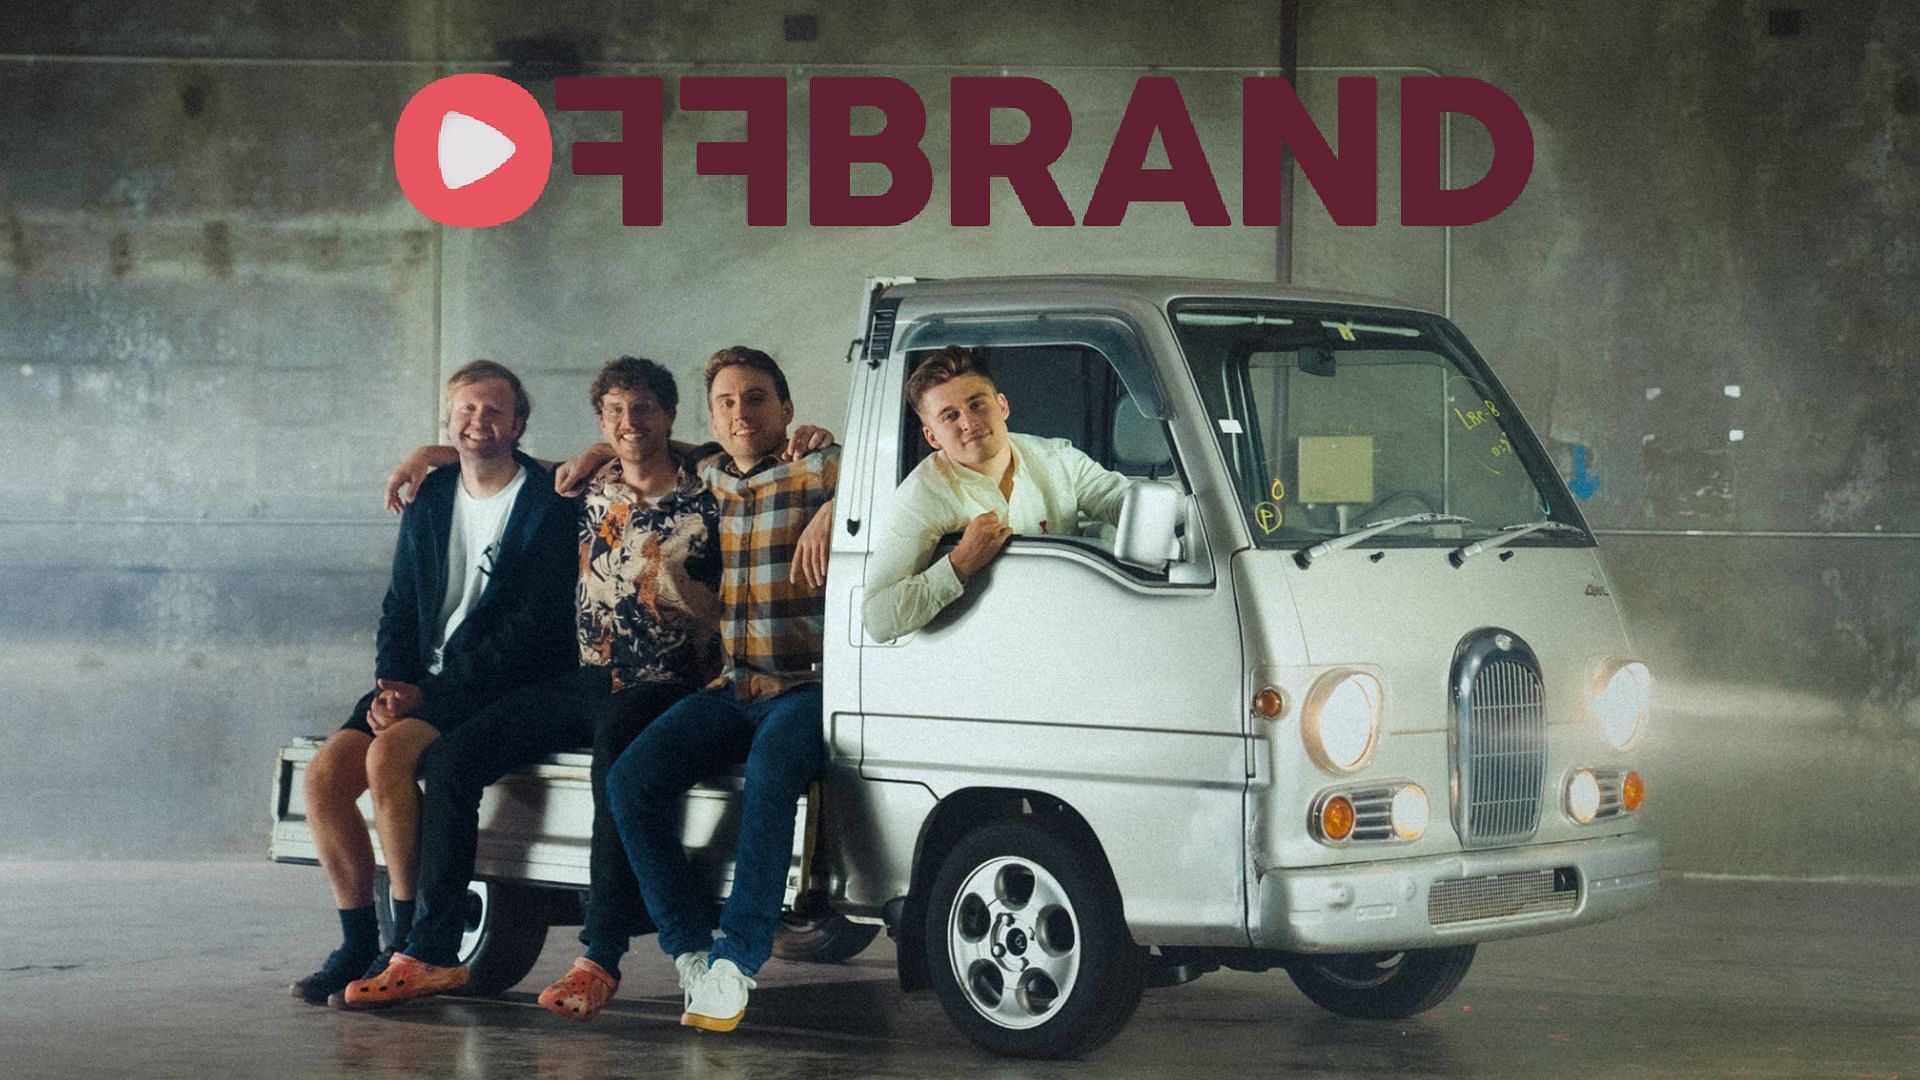 Ludwig, Atrioc, Stanz, Nick announce new business venture (Image via Offbrand.gg)